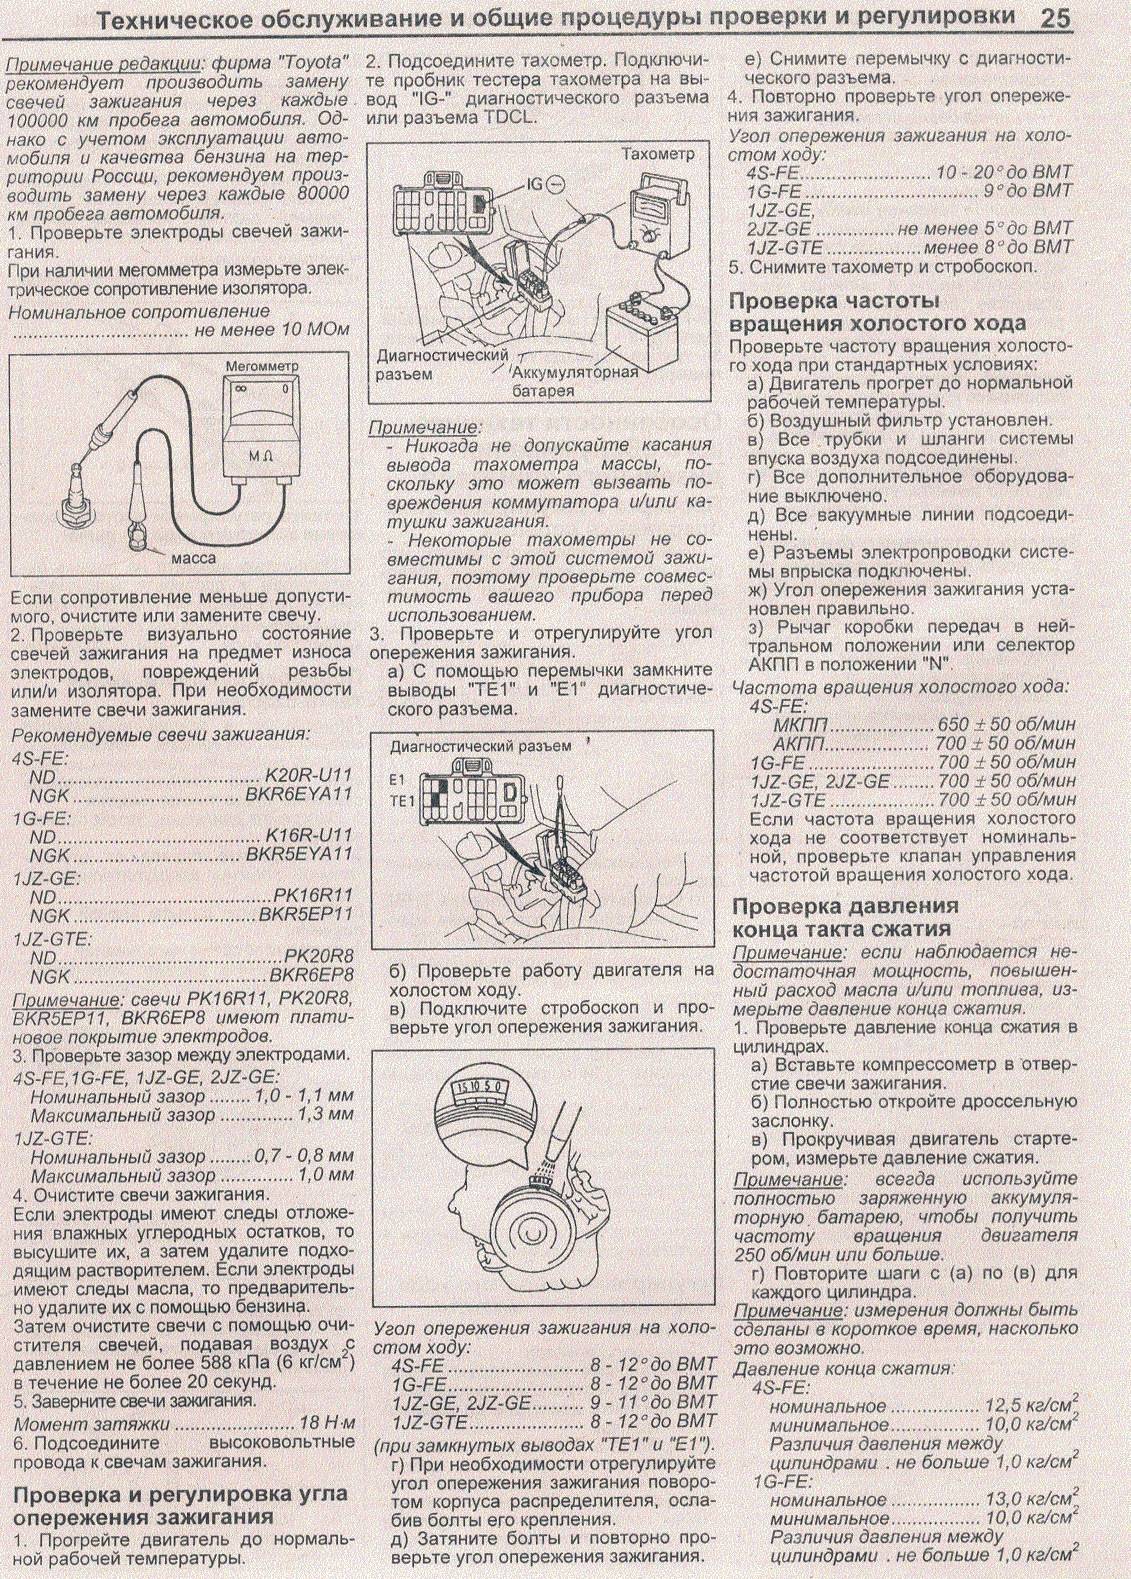 Схема и изготовление своими руками стробоскопа для установки зажигания (уоз)